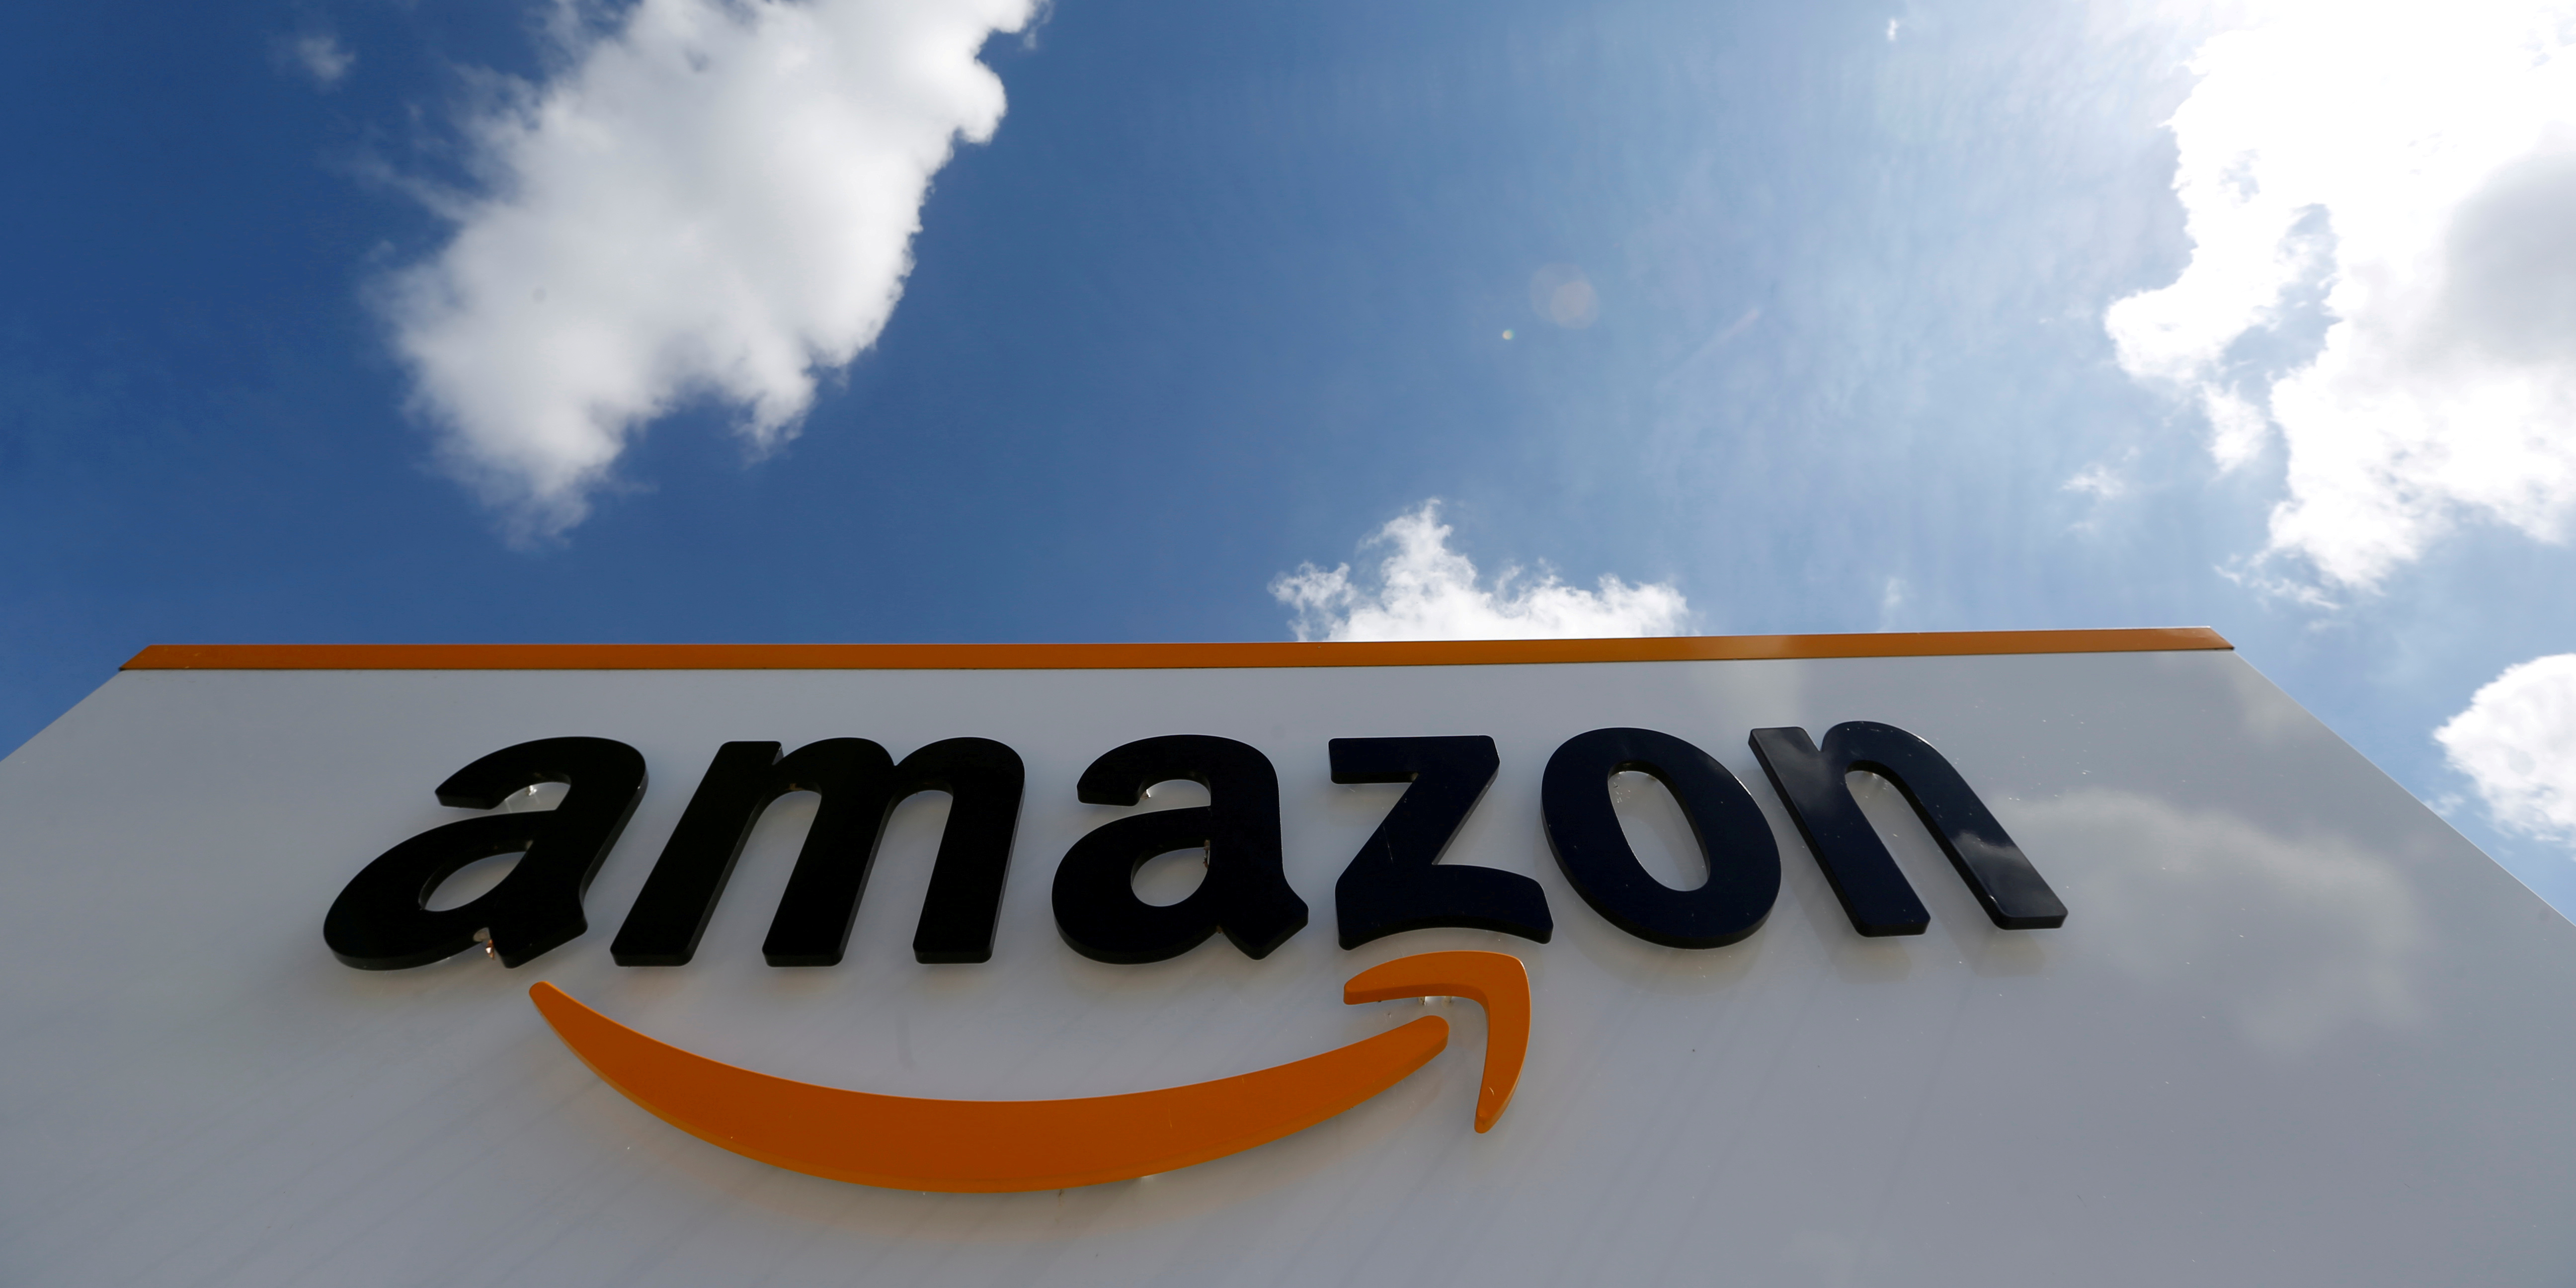 Bruselas investiga a Amazon por supuestas prácticas contra la competencia